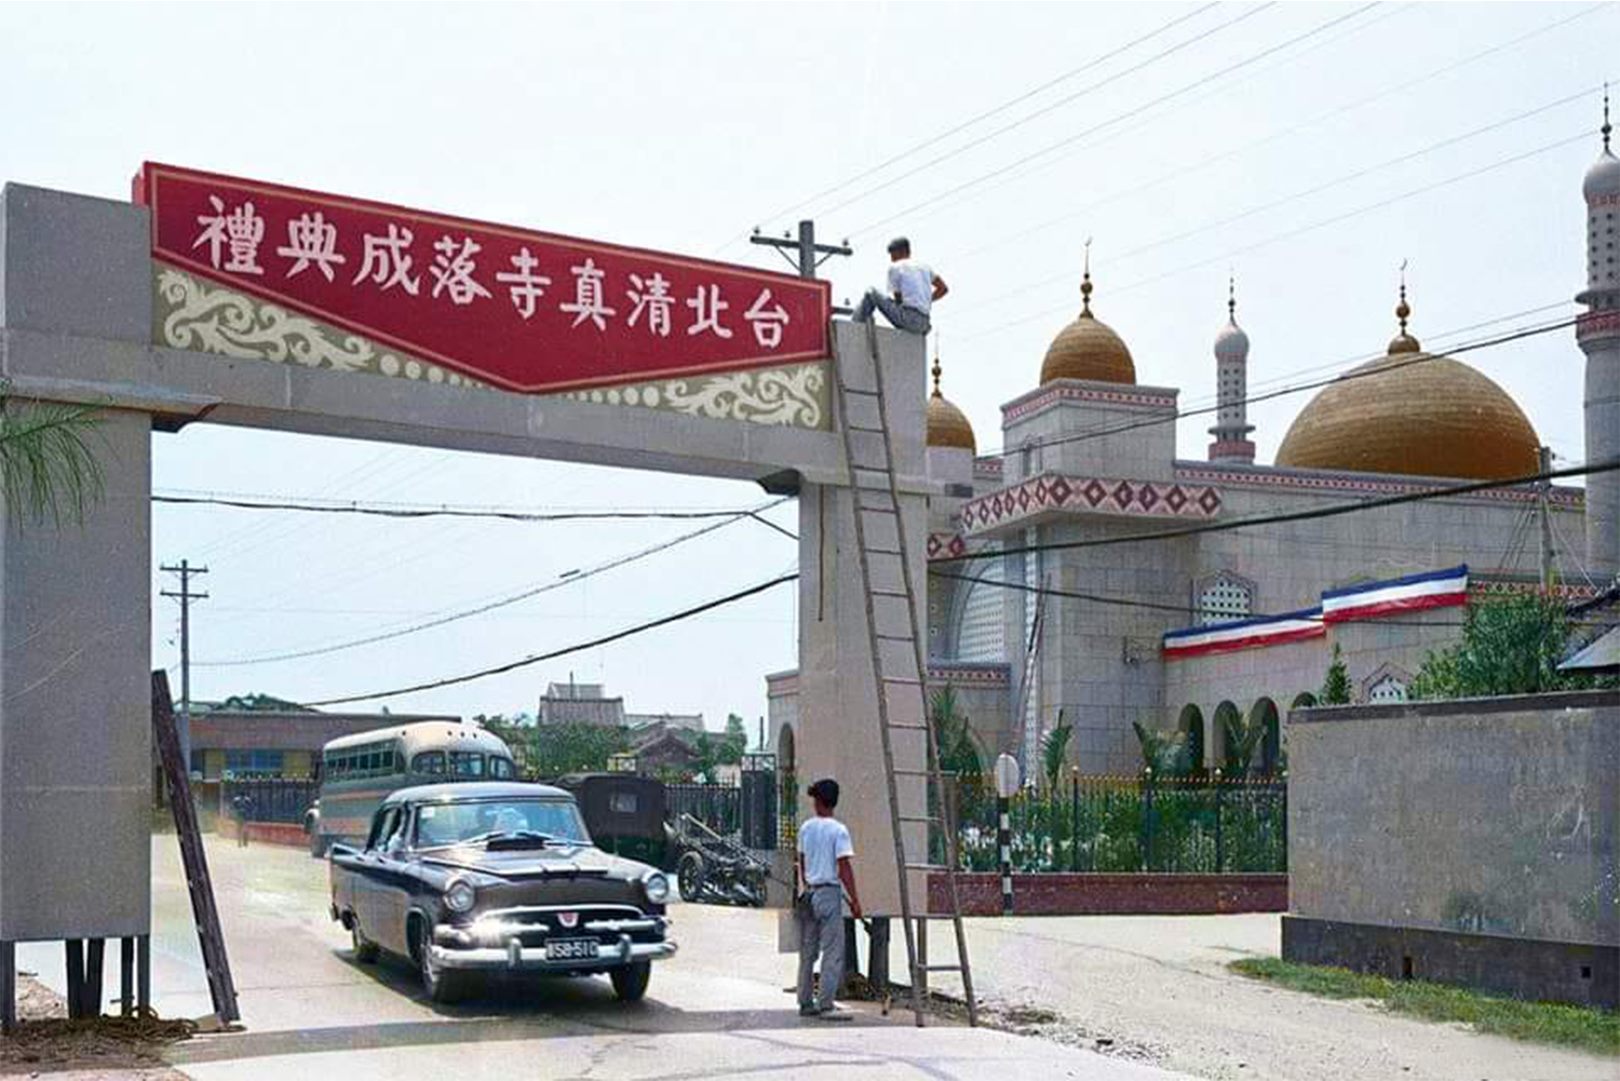 臺北清真寺開幕(1960年代)